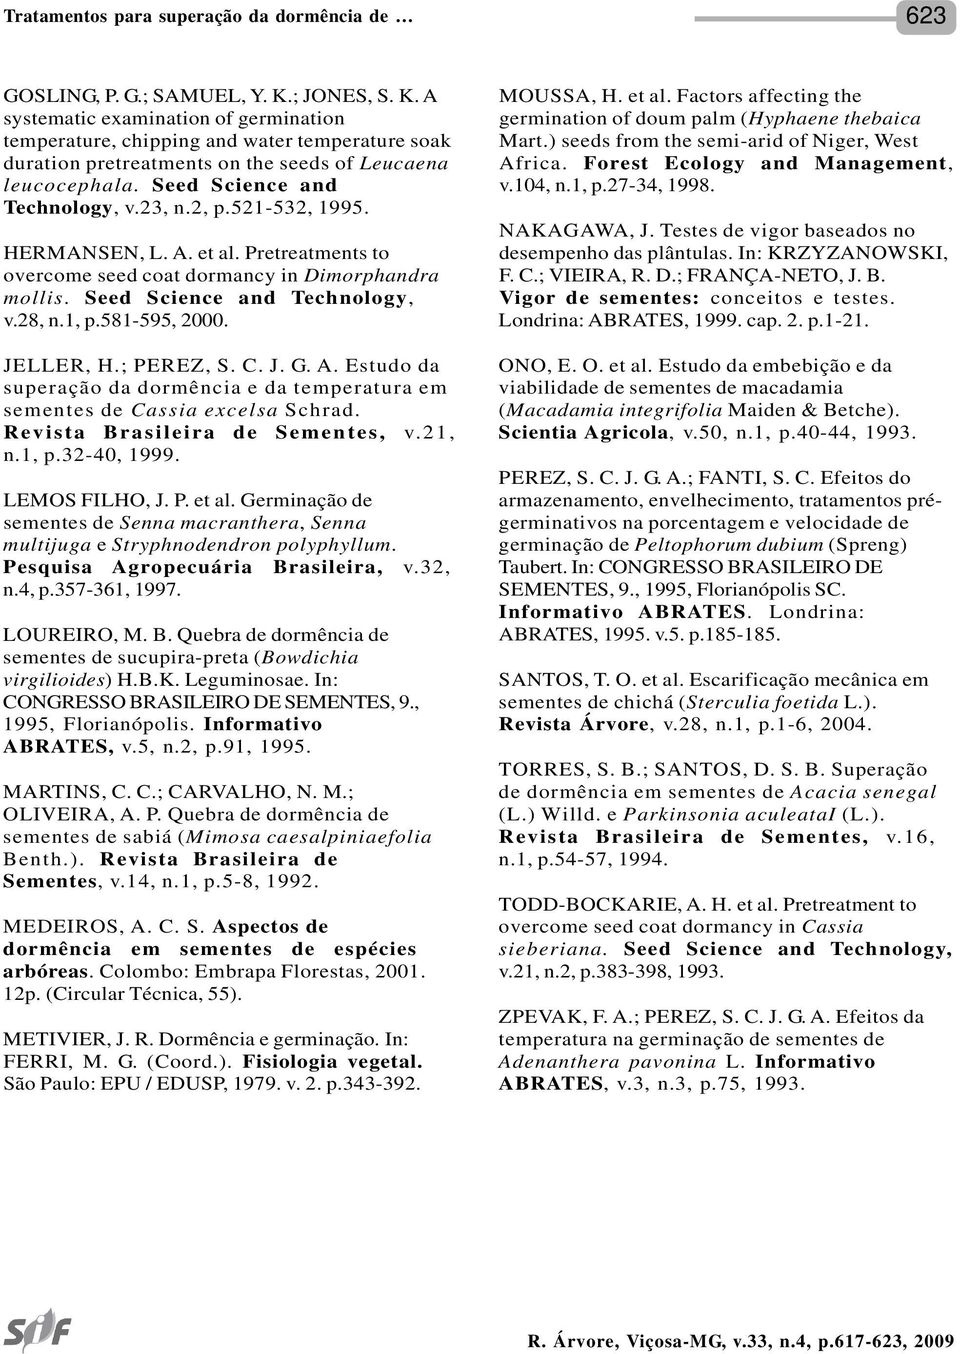 581-595, 2000. JELLER, H.; PEREZ, S. C. J. G. A. Estudo da superação da dormência e da temperatura em sementes de Cassia excelsa Schrad. Revista Brasileira de Sementes, v.21, n.1, p.32-40, 1999.